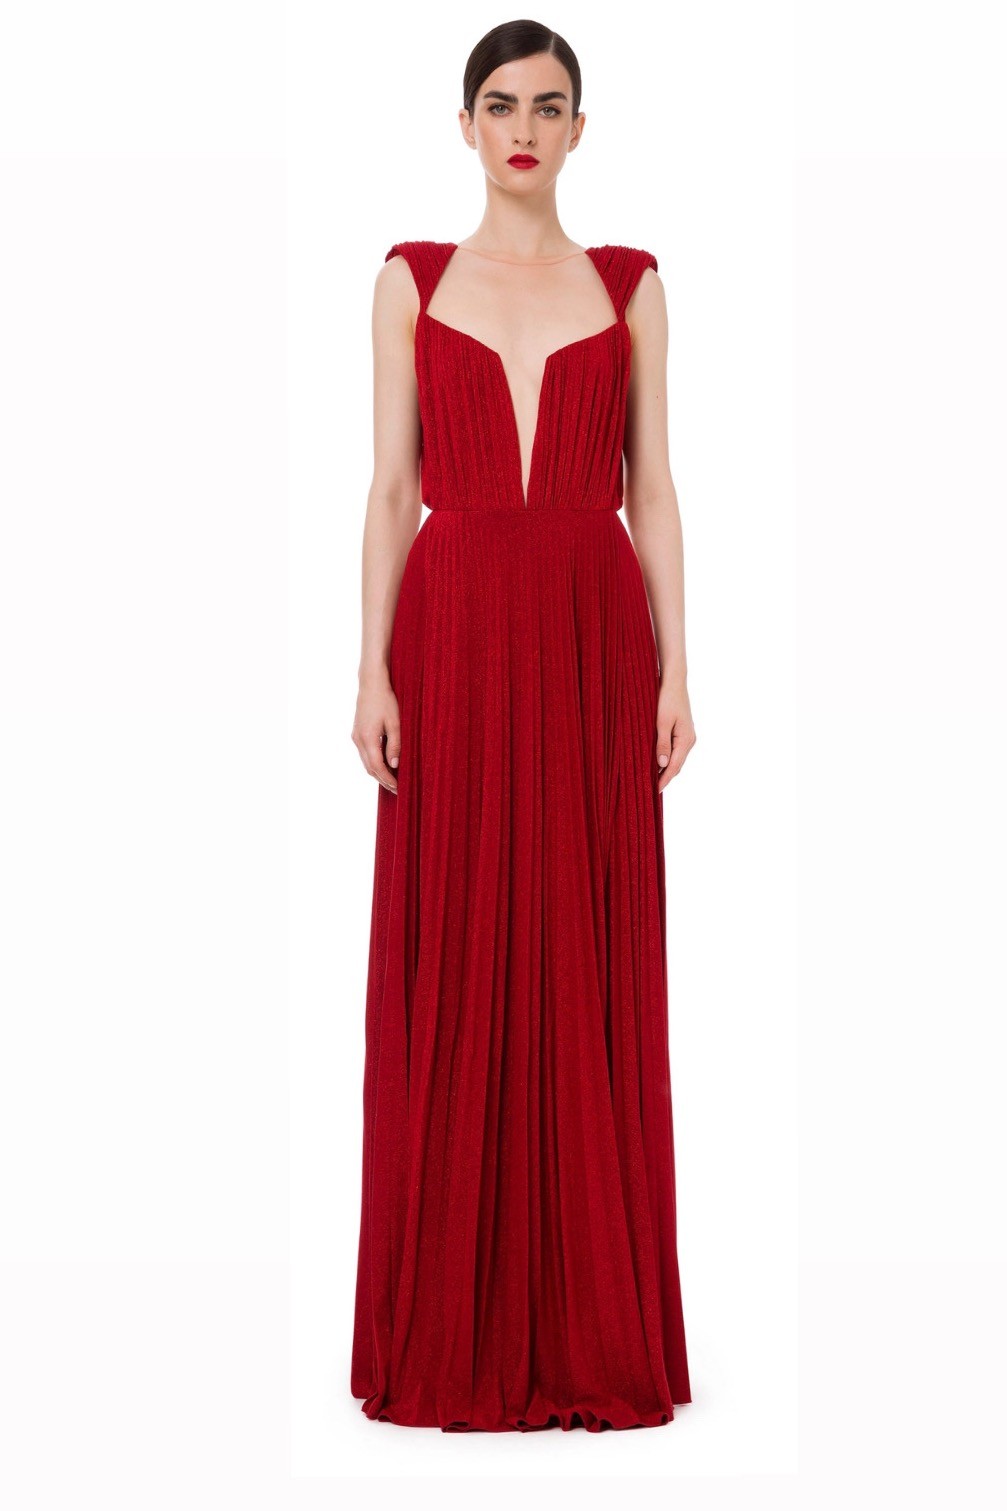  إليزابيتا فرانشي - فستان Red Carpet من جيرسيه اللوريكس مع حلية متدلية - أحمر